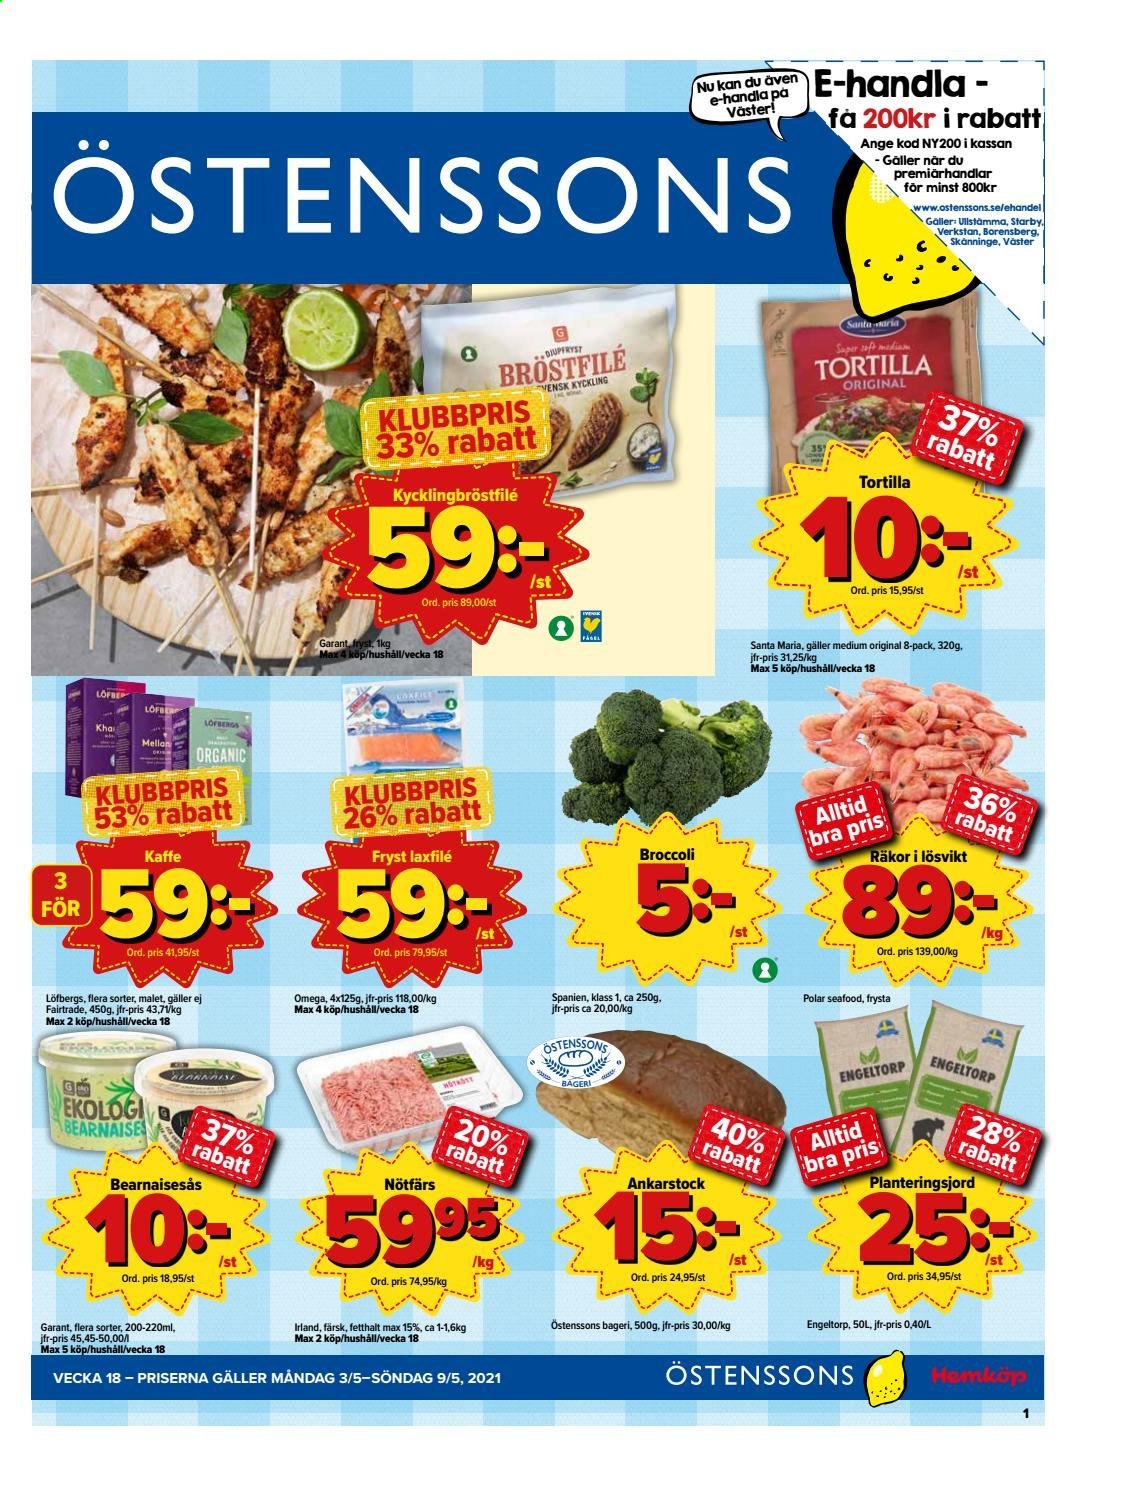 Östenssons reklamblad - 3/5 2021 - 9/5 2021.